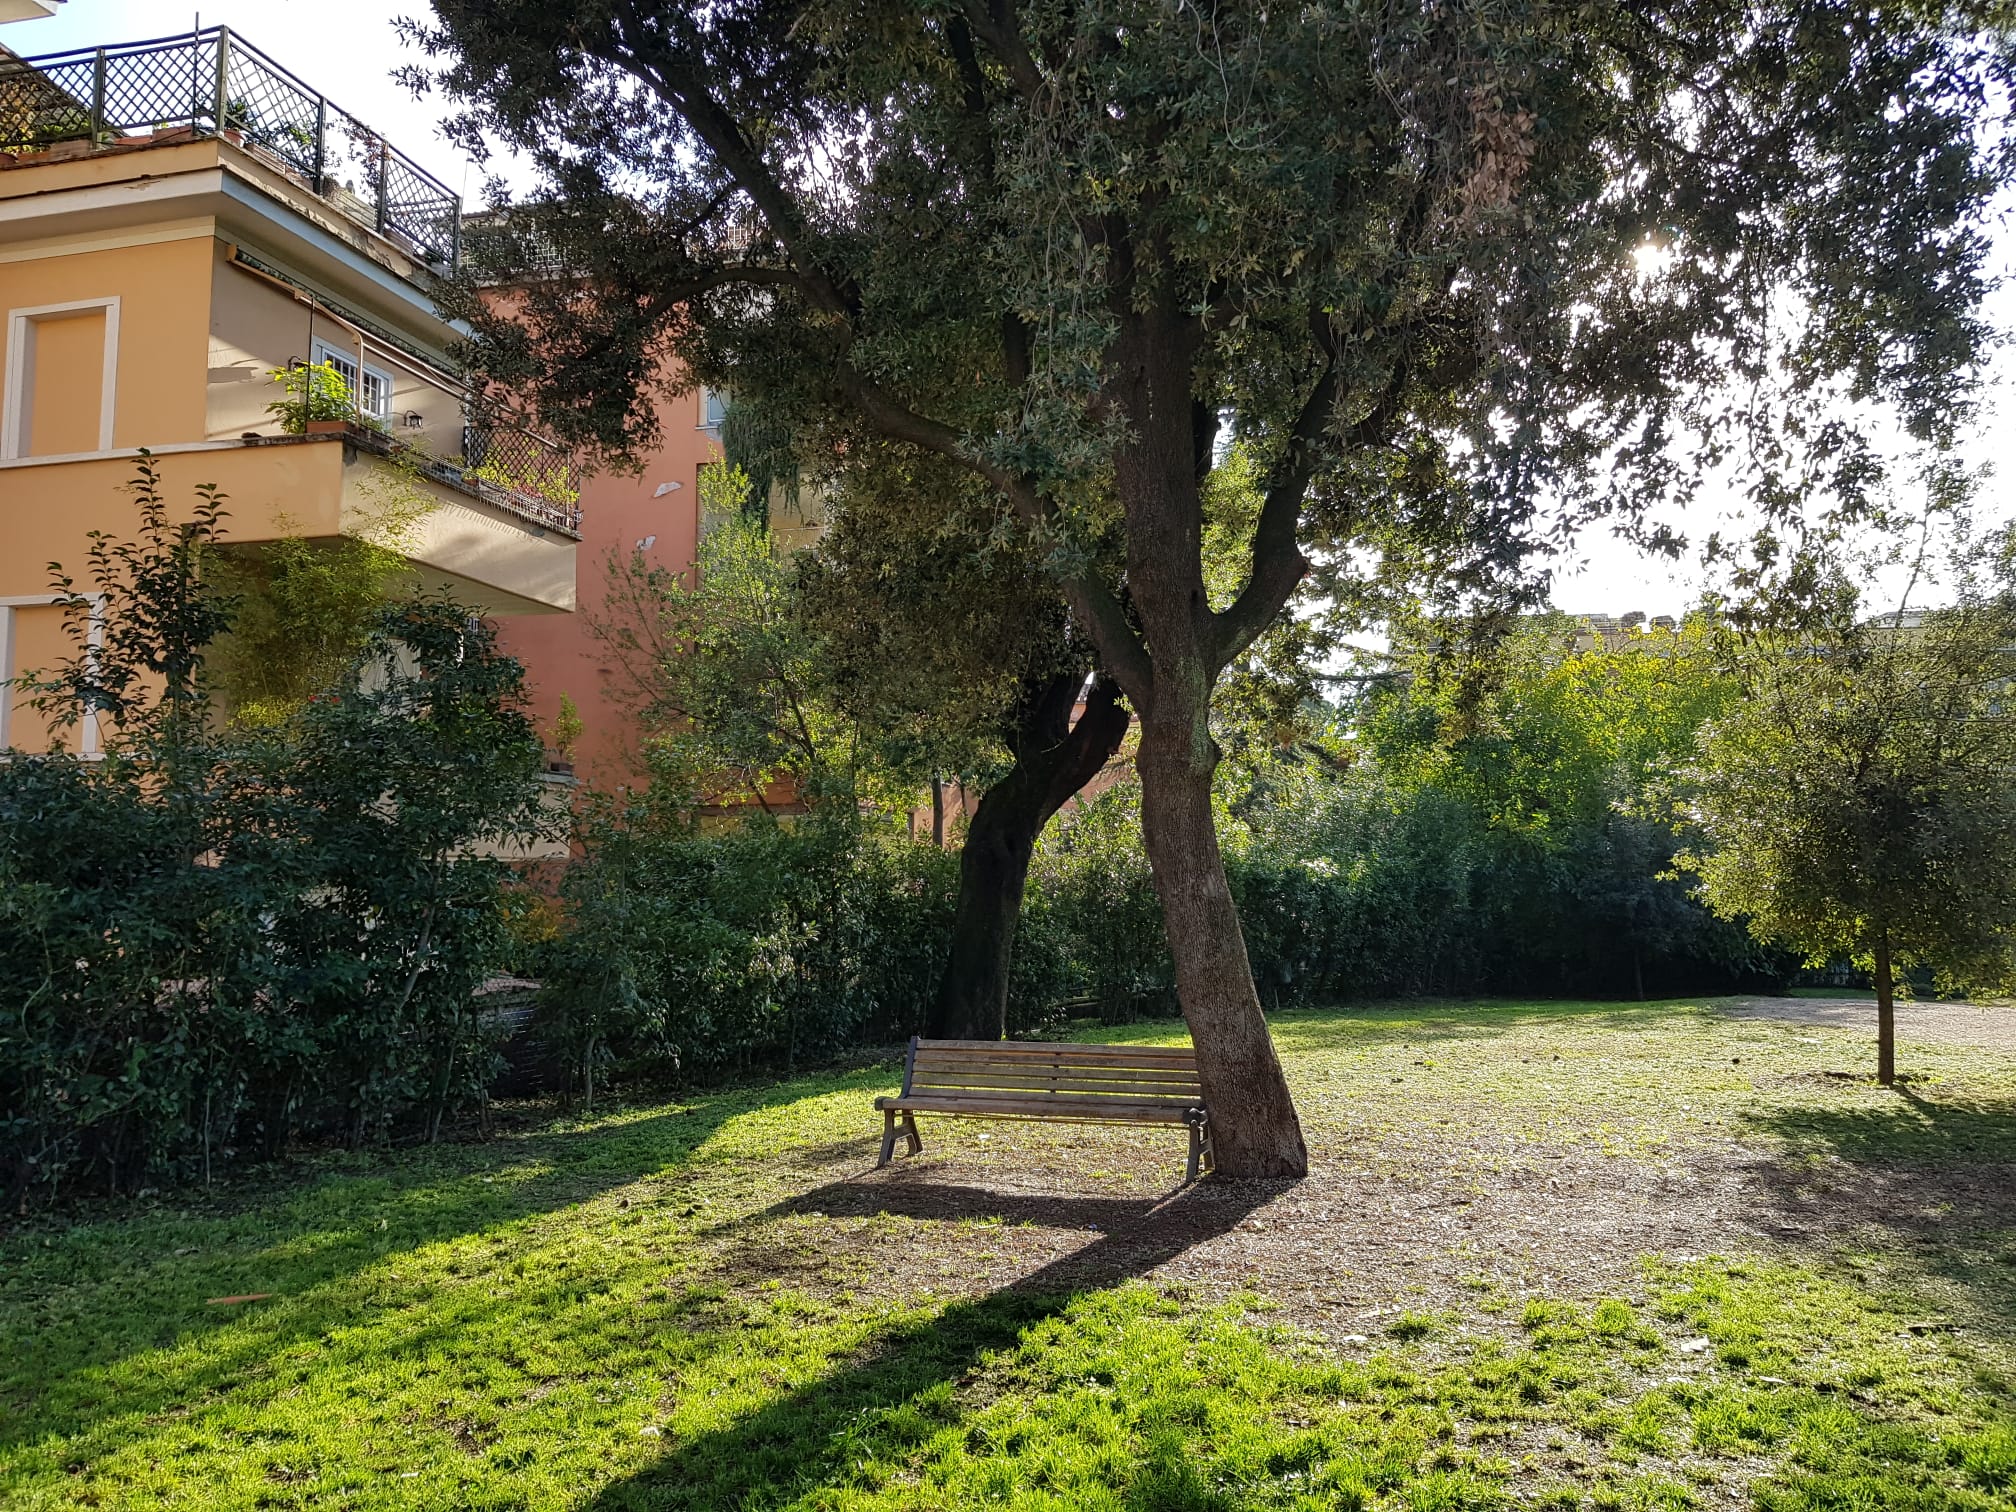 Villa Massimo